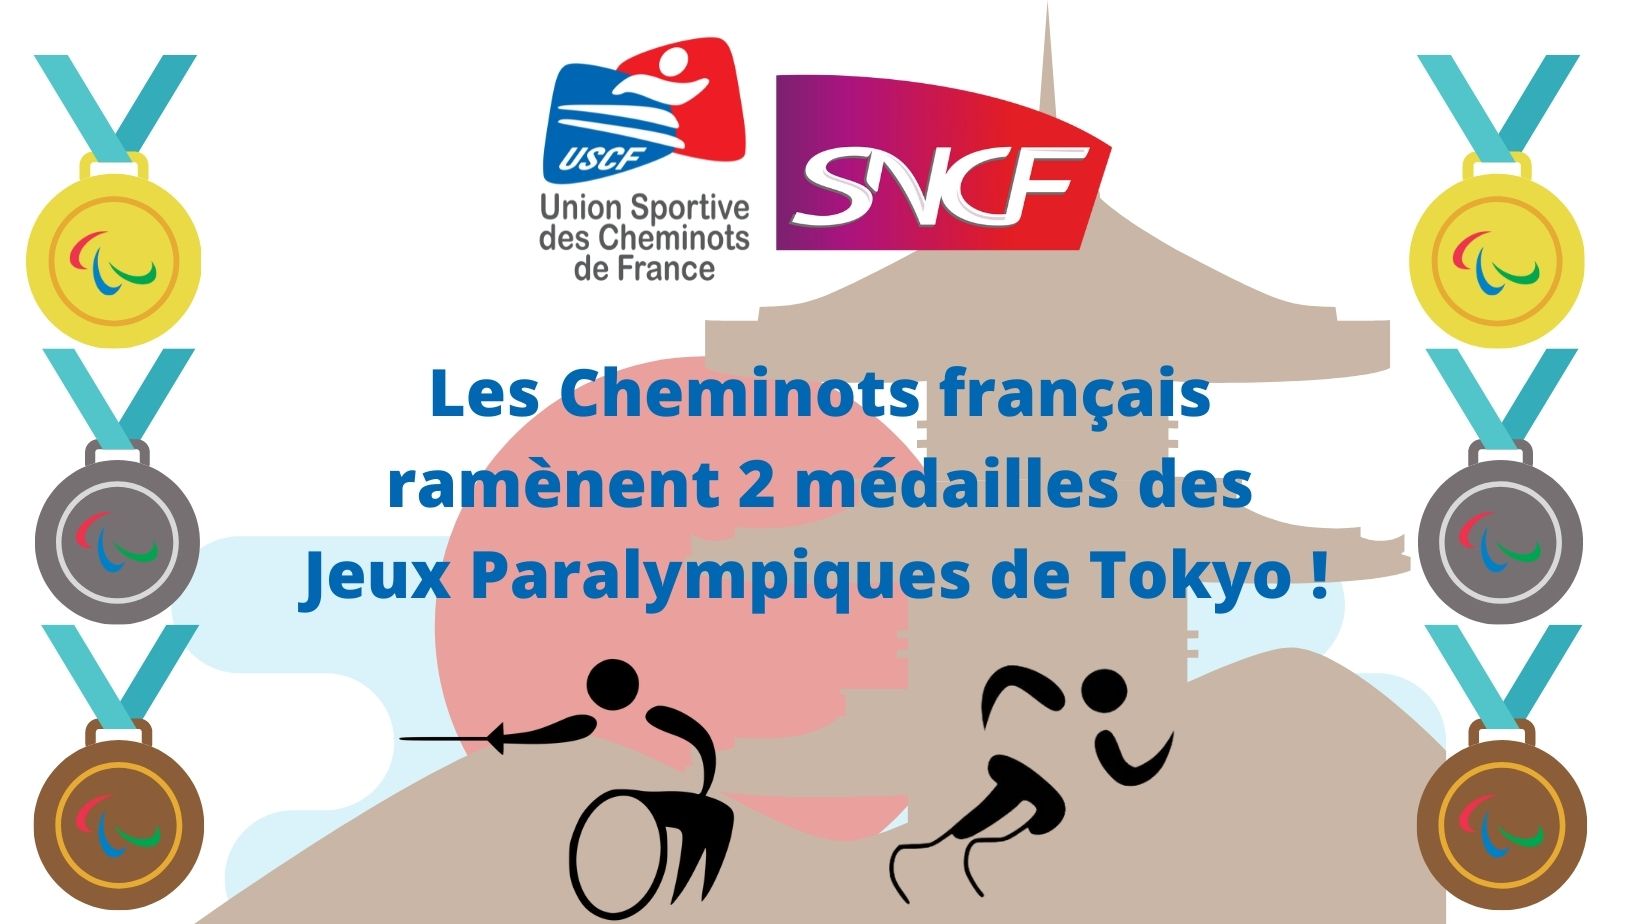 Des médailles pour des cheminots aux Jeux Paralympiques de Tokyo